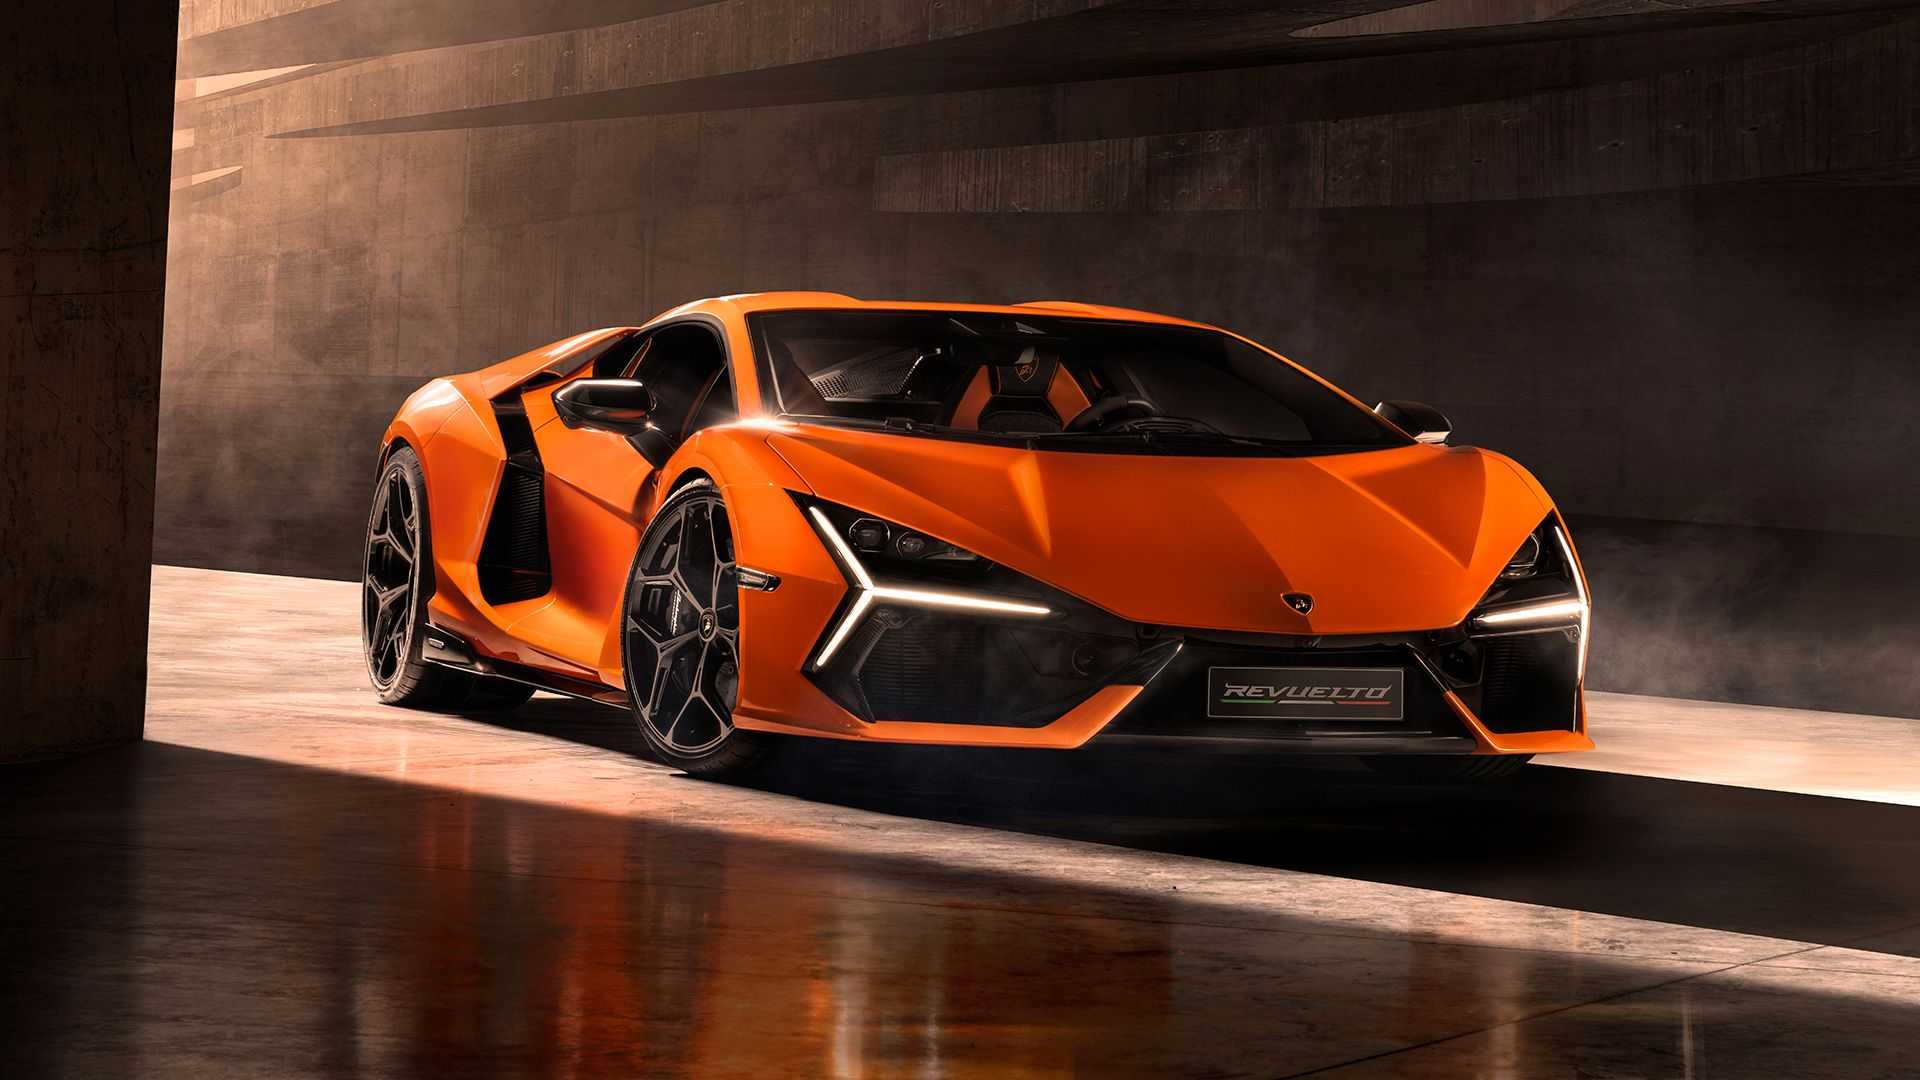 Lamborghini Huracan lộ ảnh phiên bản mới bắt mắt người nhìn hơn